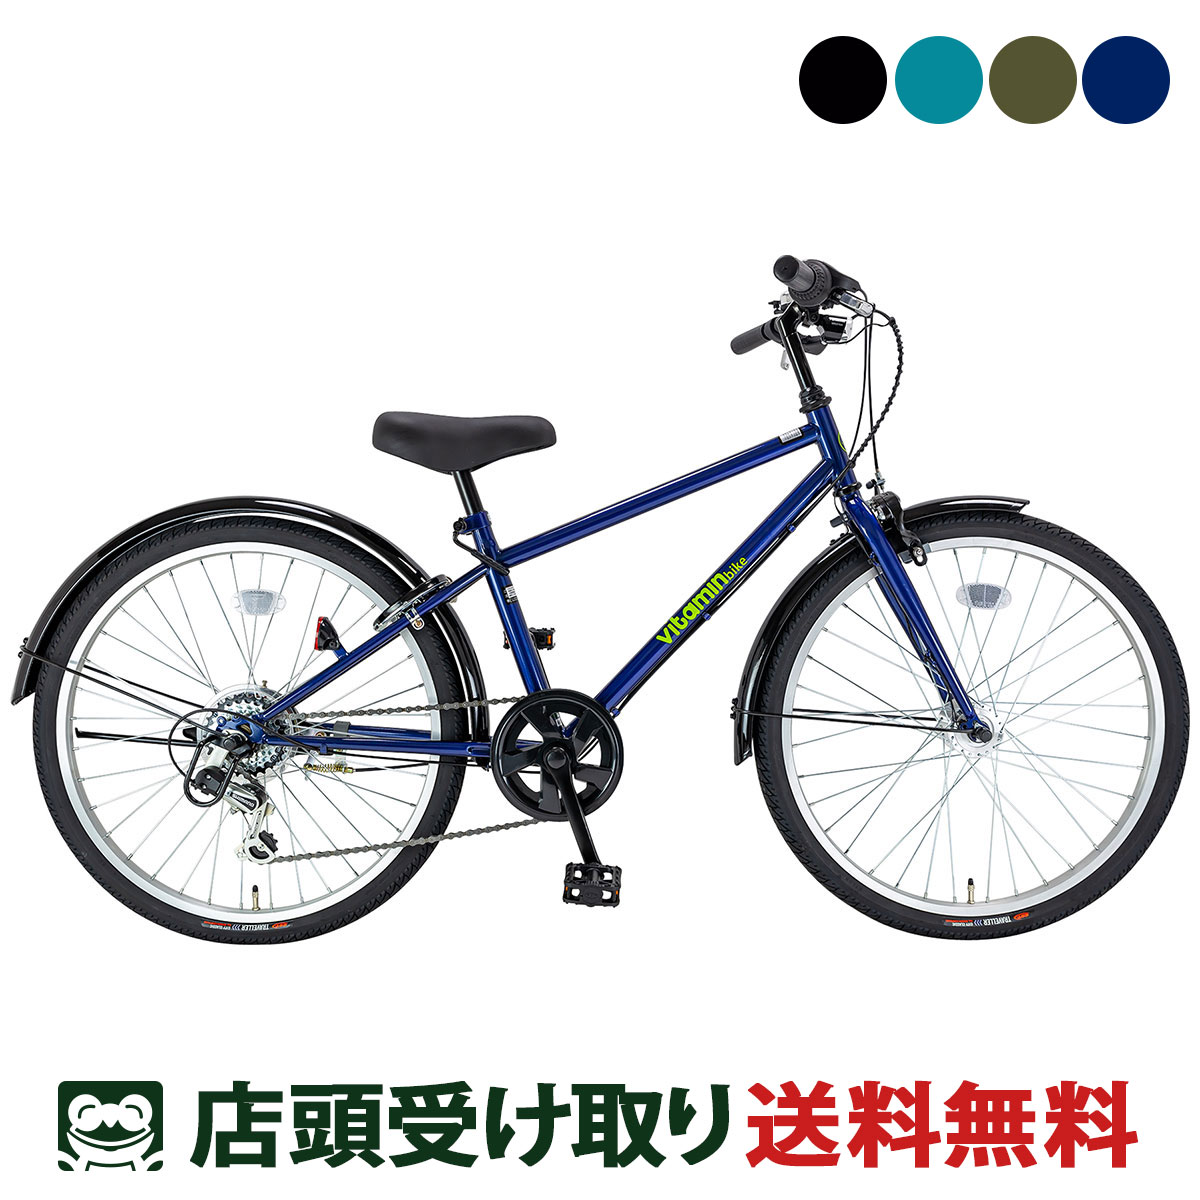 サイクルスポット vitamin bike JR24 ビタミン バイク ジュニア24 男の子 子供自転車 24インチ 6段変速 [CS-246JR-HD-2]